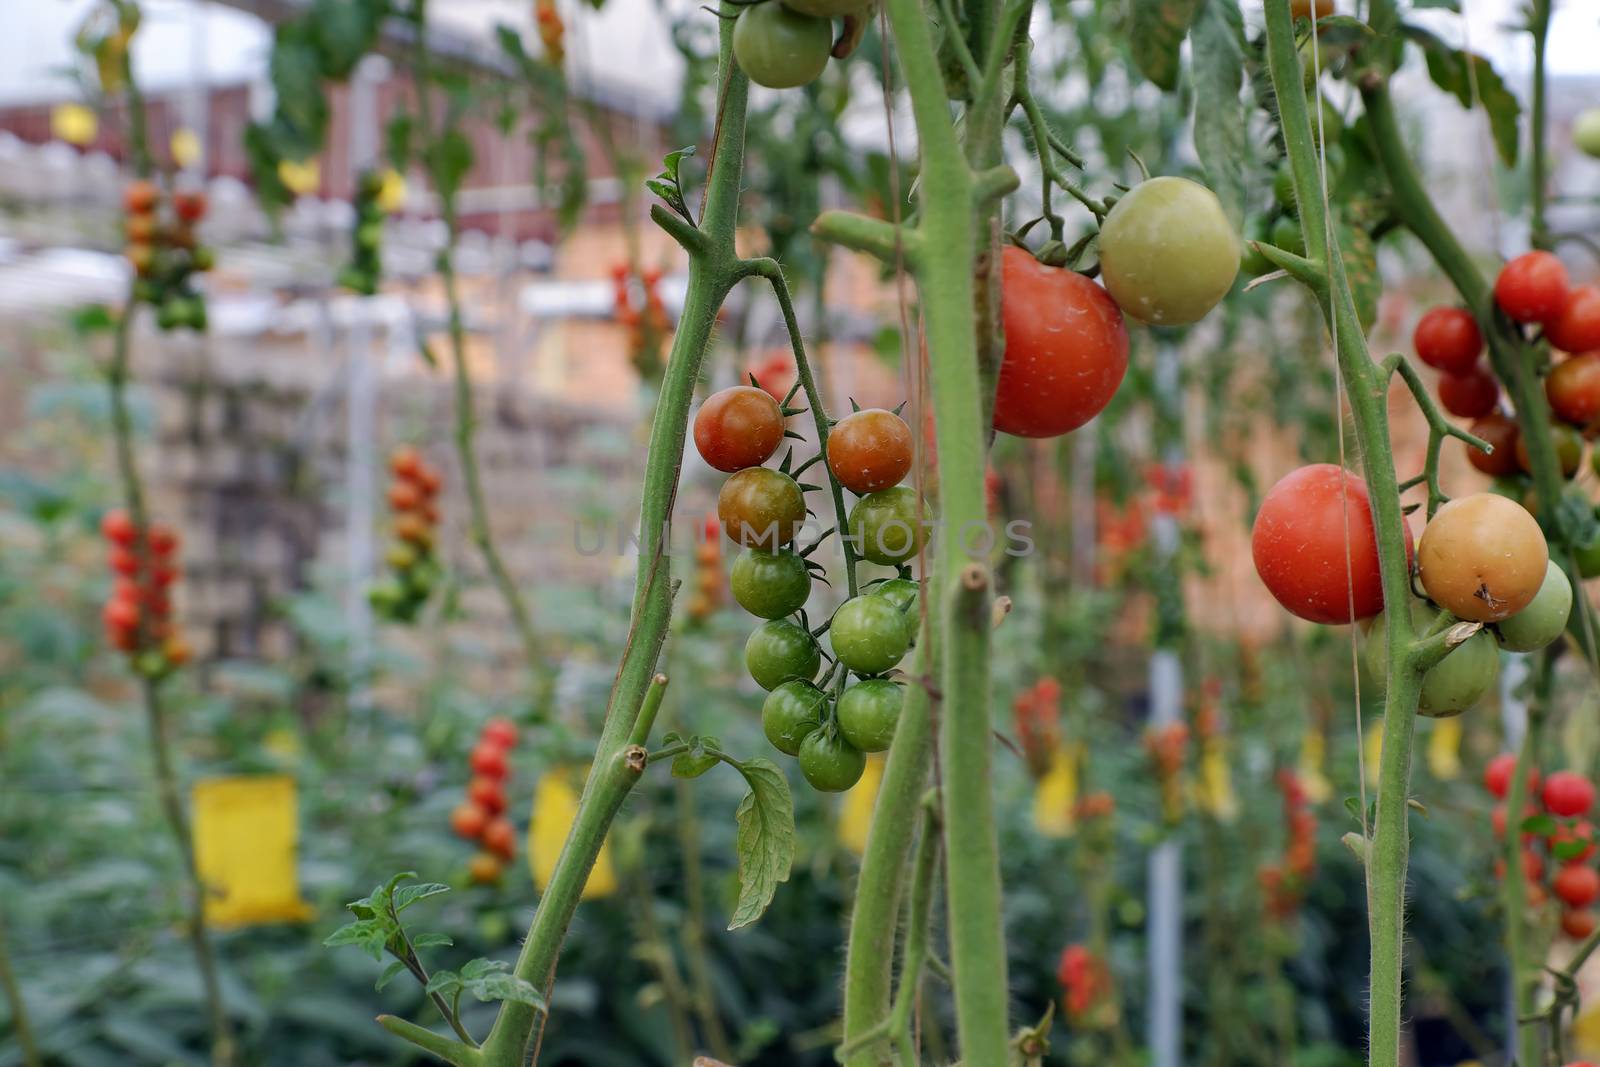 Safe vegetable farm, Da Lat tomato garden by xuanhuongho